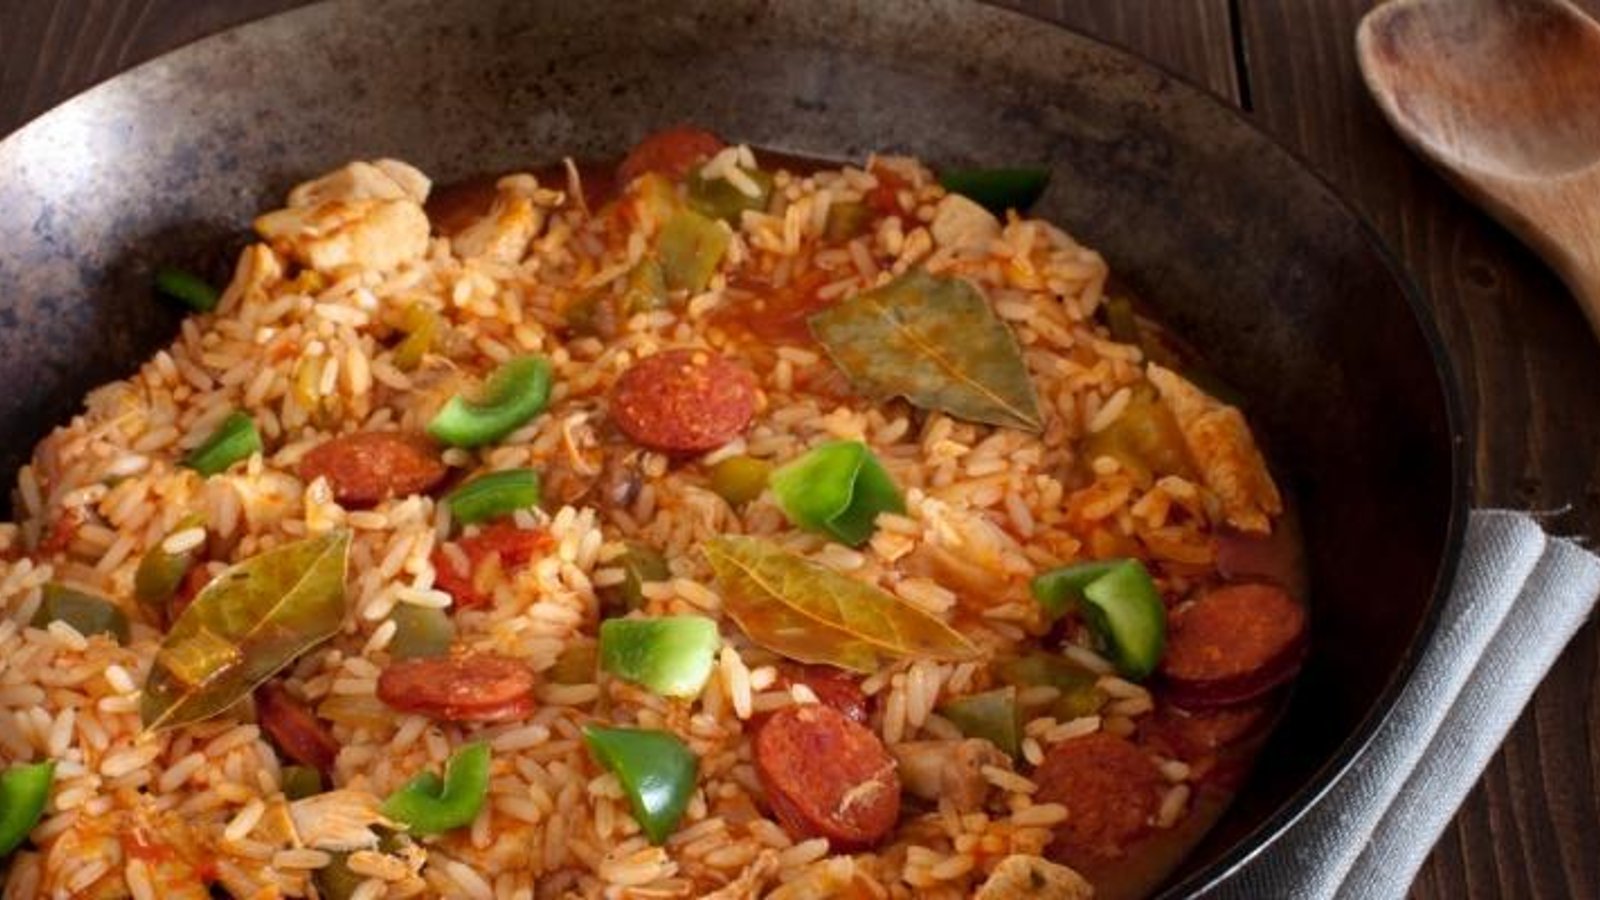 Découvrez la Jambalaya, faite de riz, de saucisses et de morceaux de poulet...une recette à découvrir